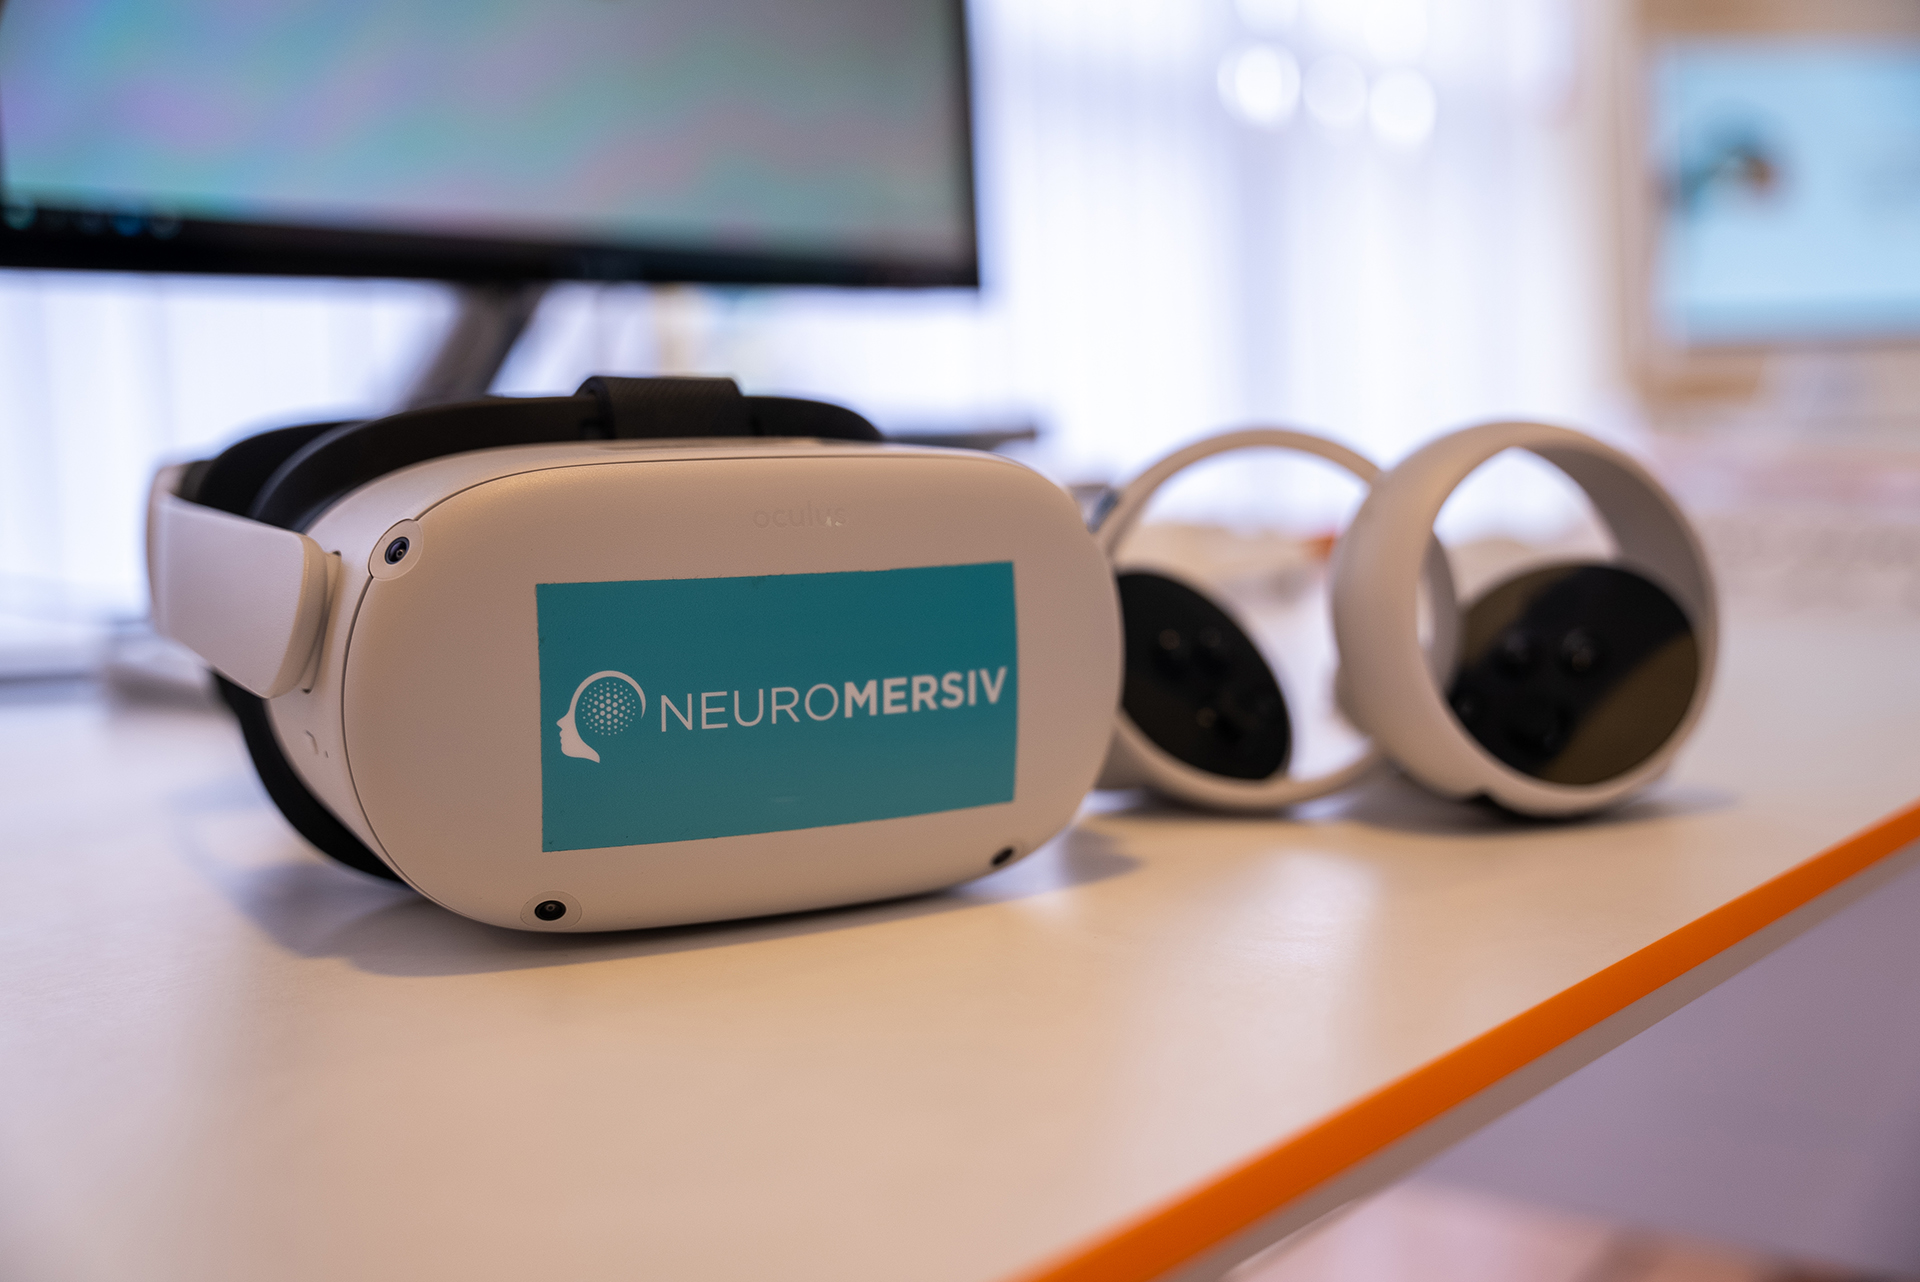 Neuromersiv's VR system Ulyses